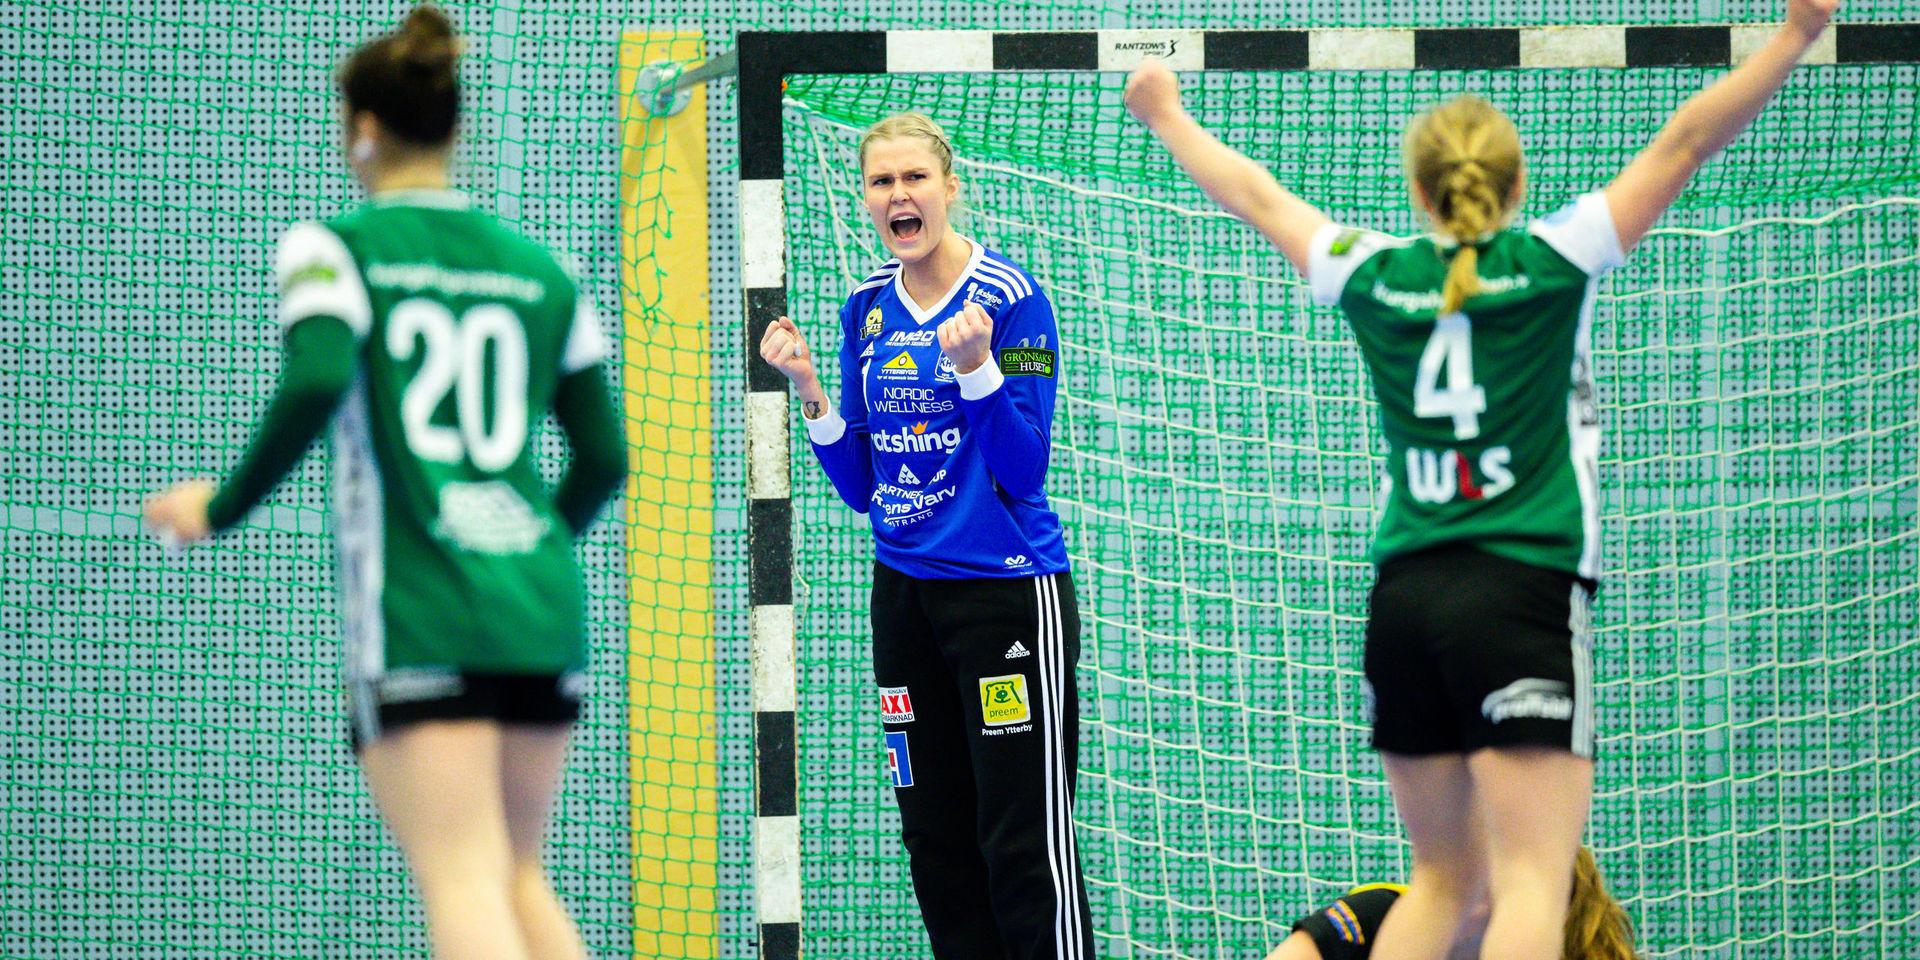 Enligt Bohusläningens obekräftade uppgifter kommer Sofie Börjesson att spela för Sävehof nästa säsong. Klubben som vunnit 11 SM-guld på de 13 senaste säsongerna